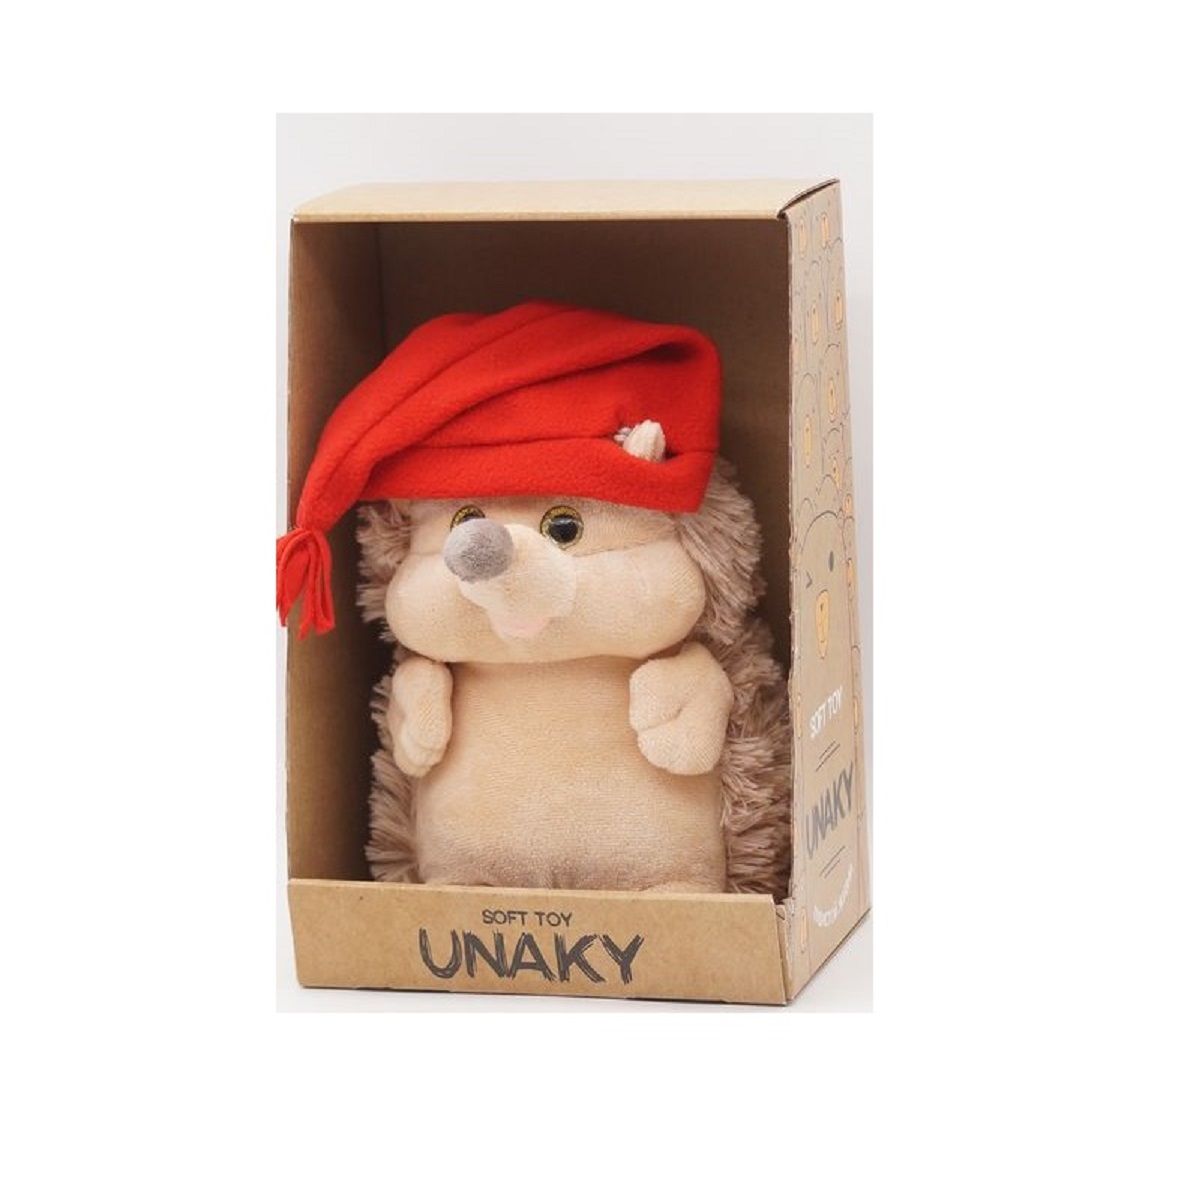 Мягкая игрушка Unaky Soft Toy Ежик Златон 22 см 0913222-28M красный; бежевый; белый мягкая игрушка unaky soft toy ежик златон с красным сердцем 17 см